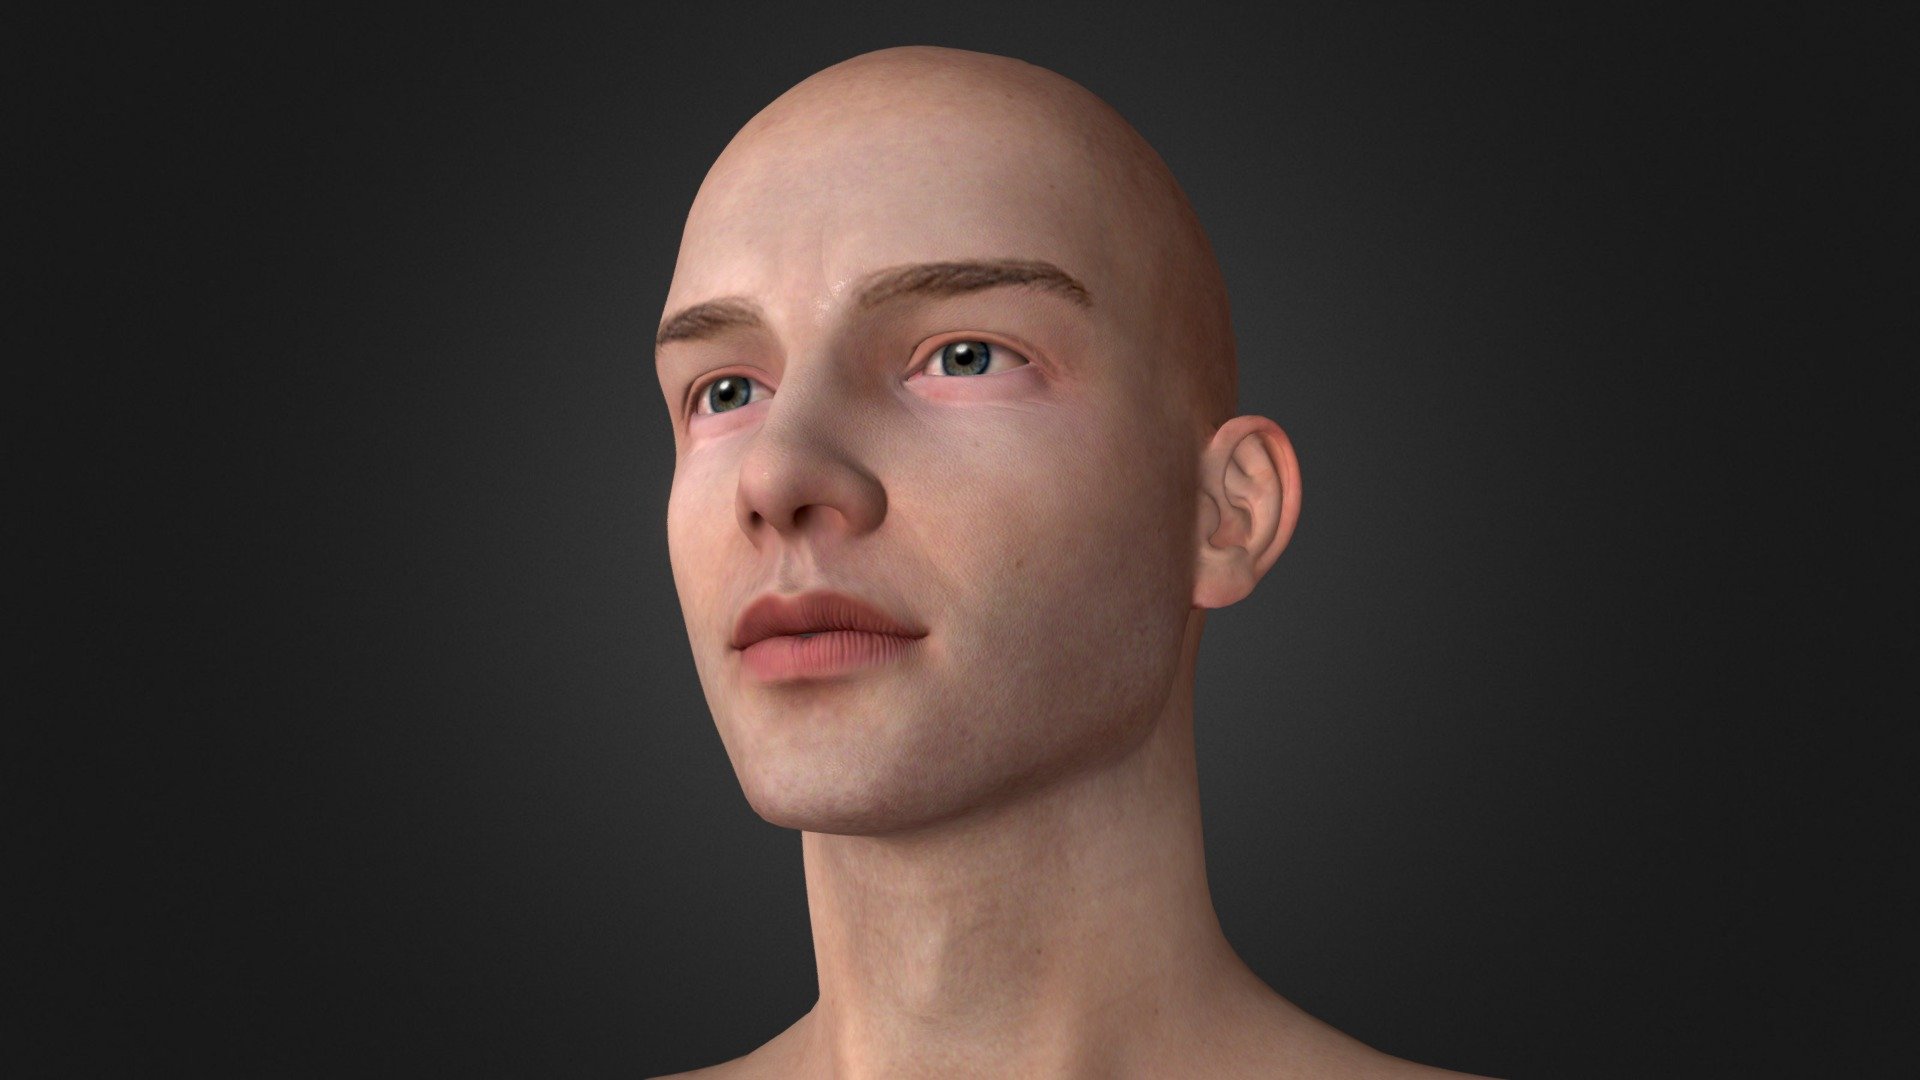 procreate 3d face model free